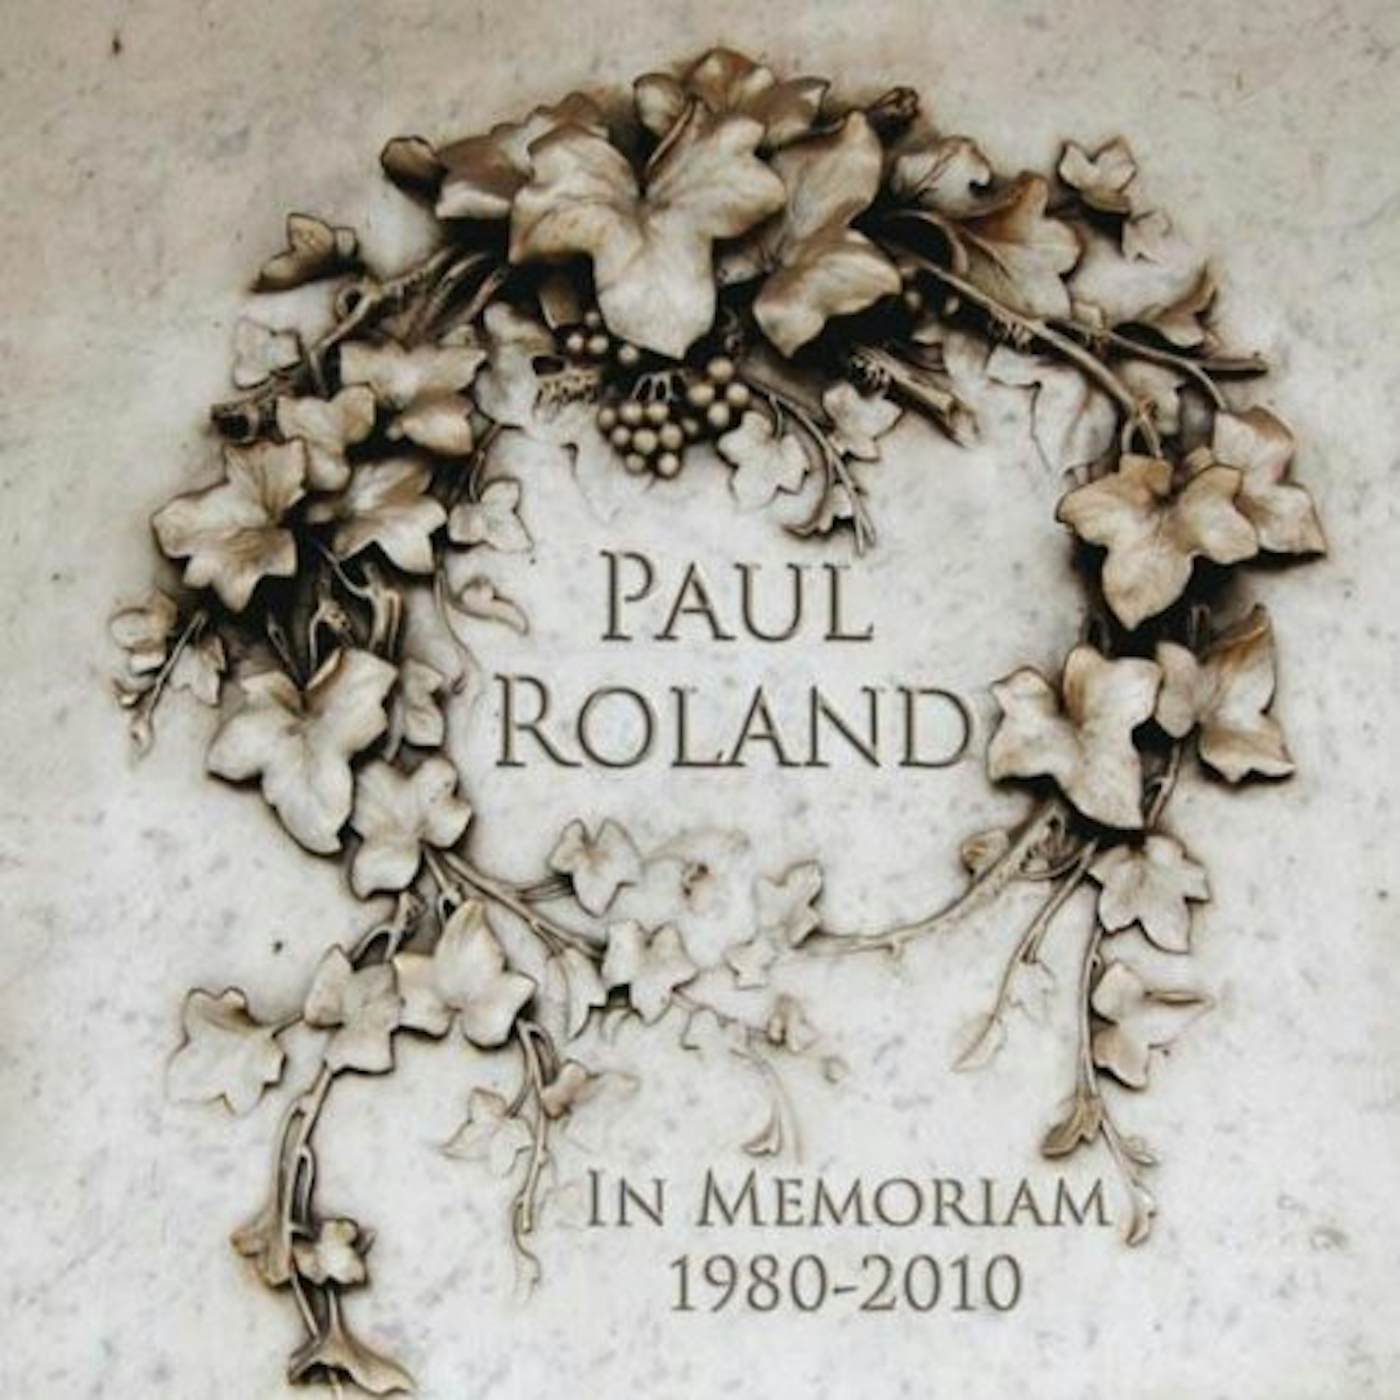 Paul Roland IN MEMORIAM CD